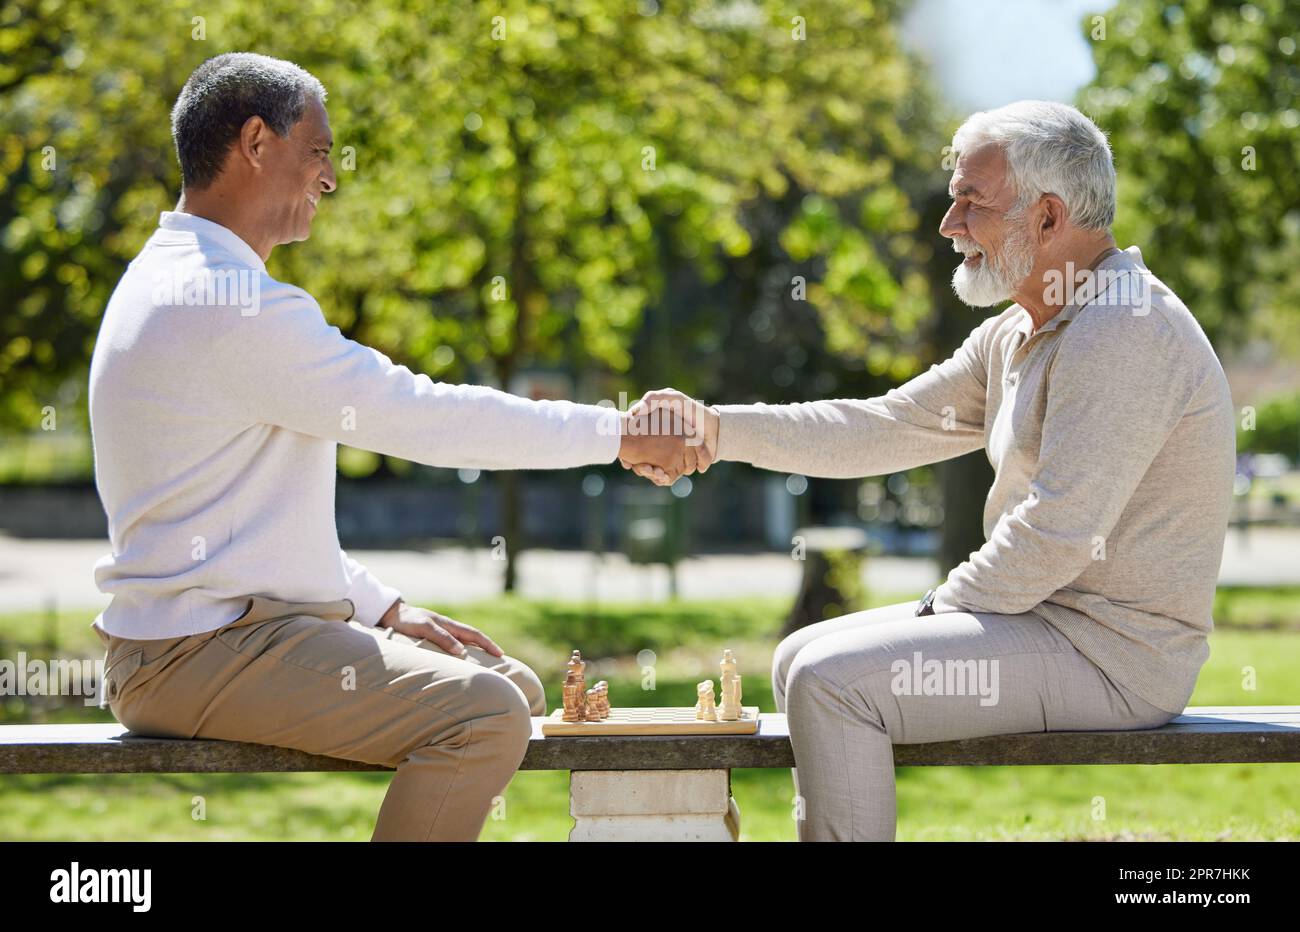 Che vinca il miglior uomo: Due uomini anziani seduti insieme su una panchina del parco e scuotendo le mani prima di giocare a scacchi. Foto Stock